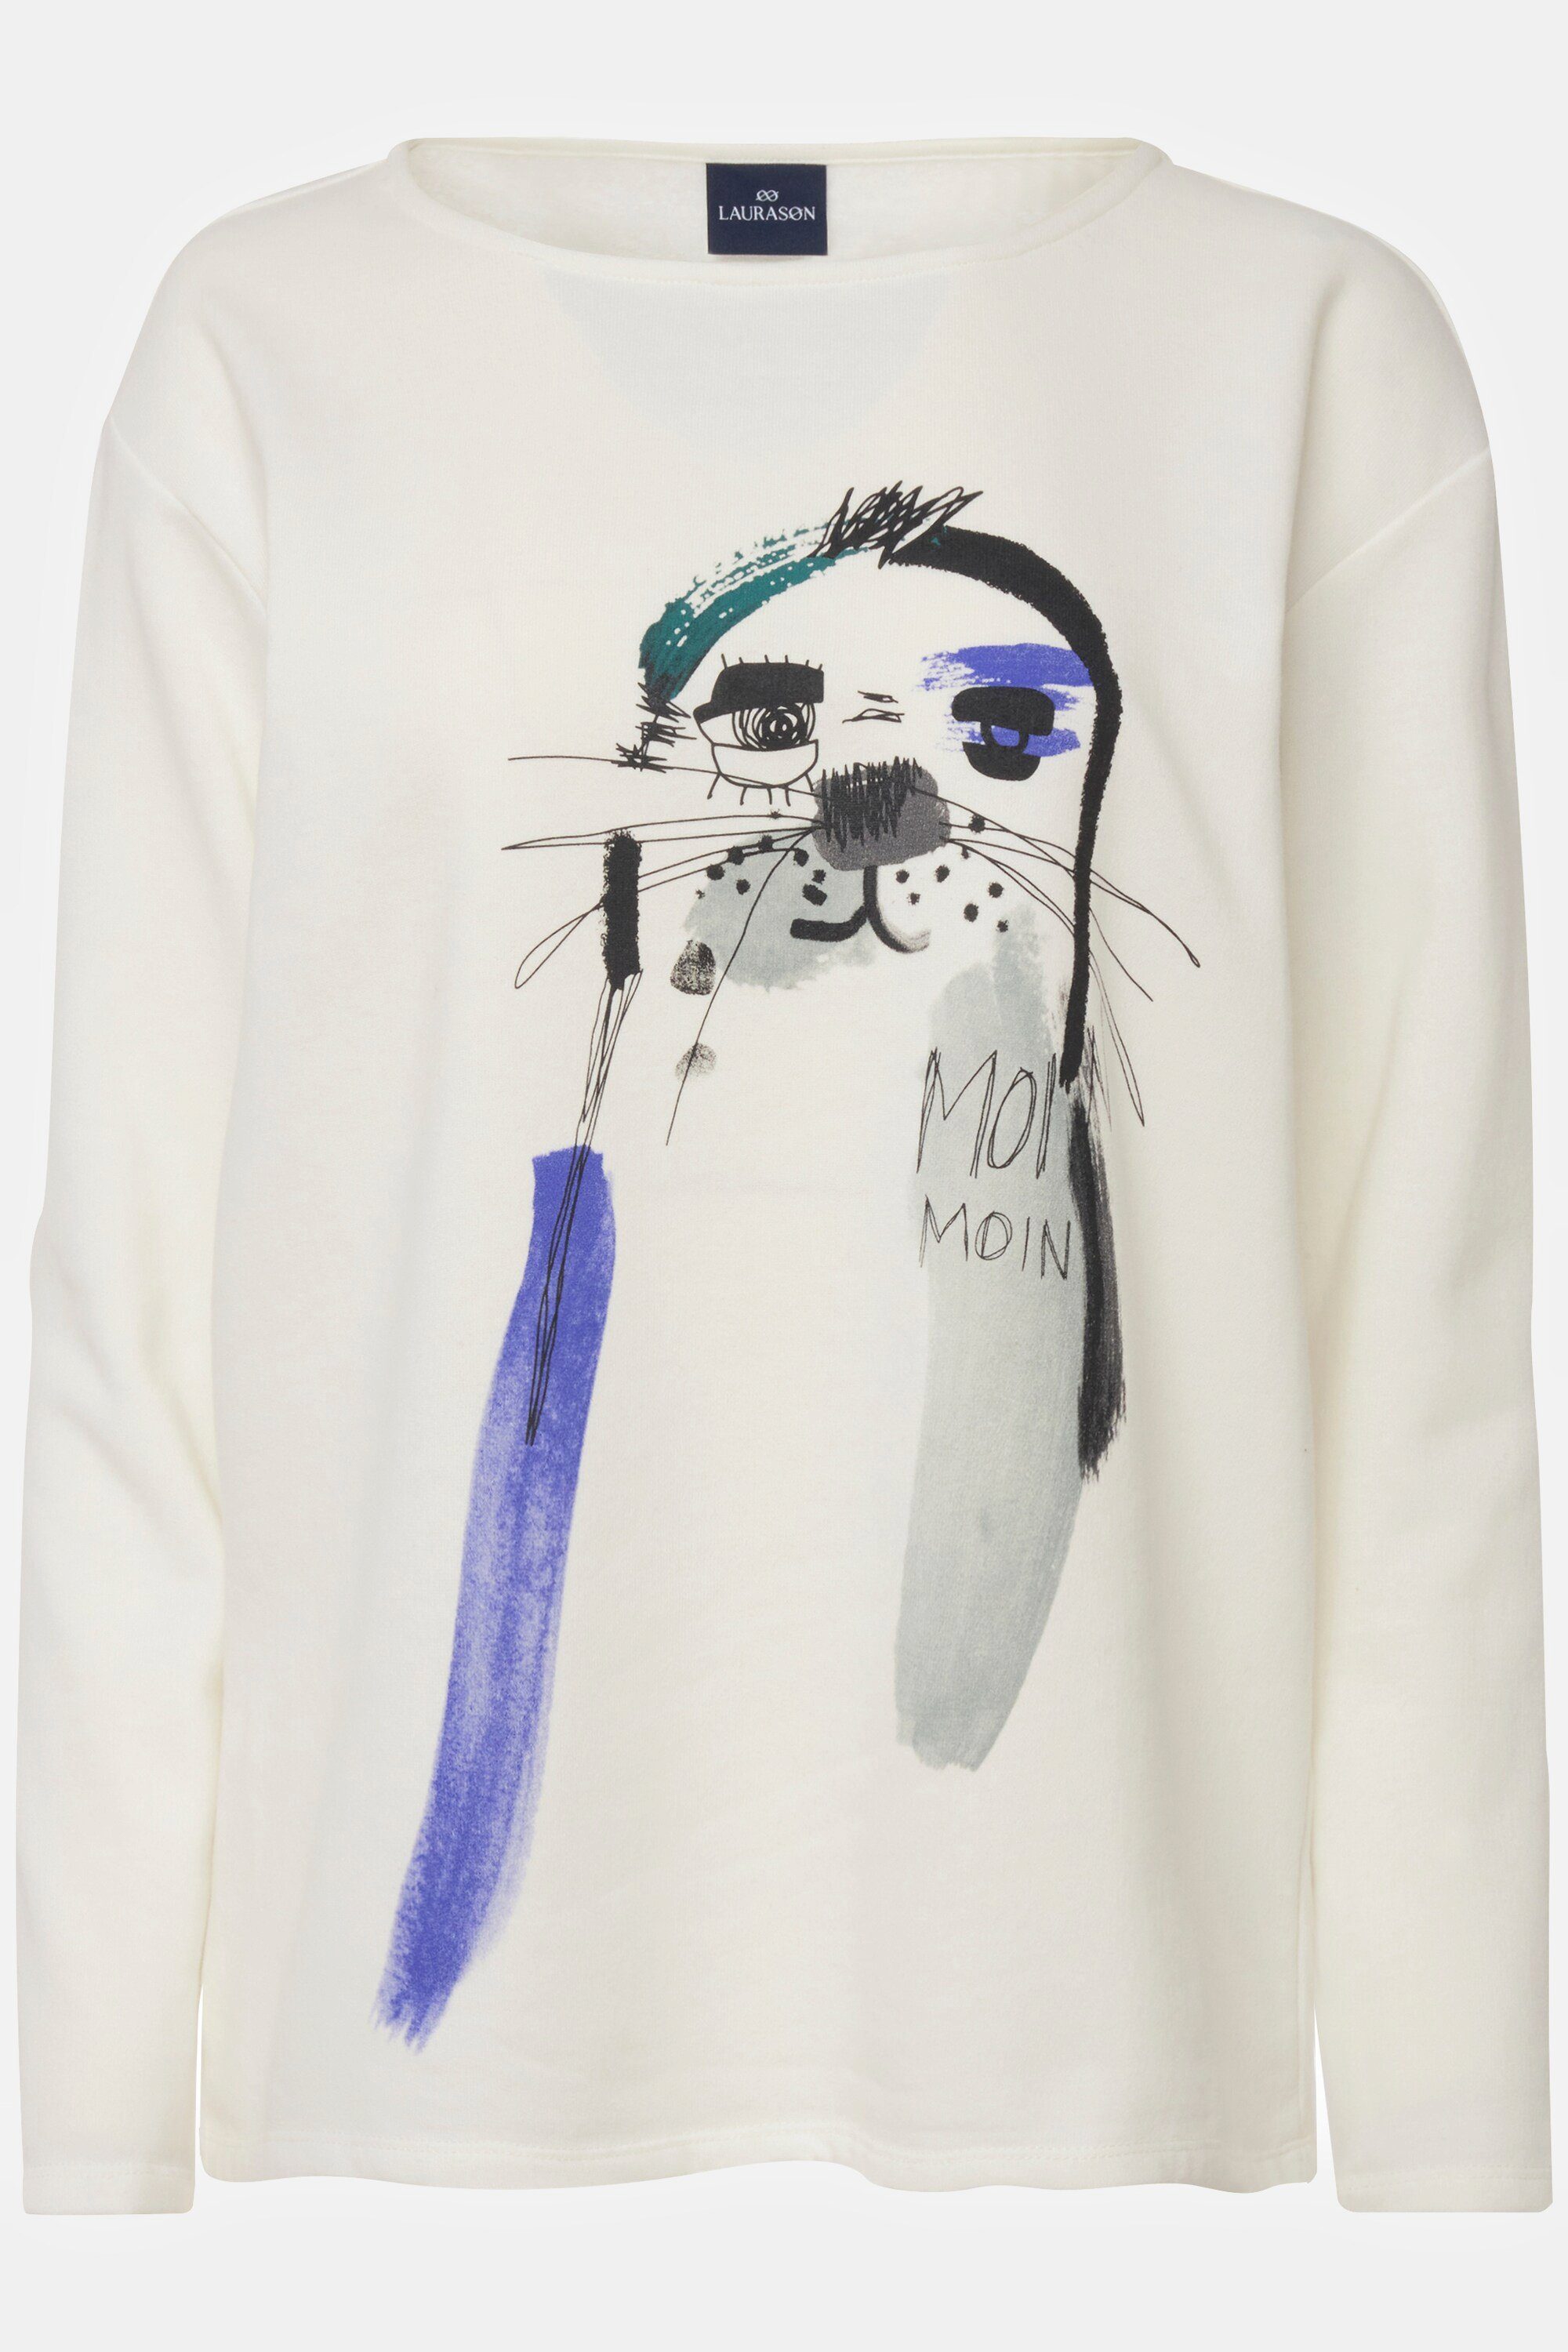 Laurasøn Sweatshirt Sweatshirt oversized Langarm Rundhals offwhite Print Robben